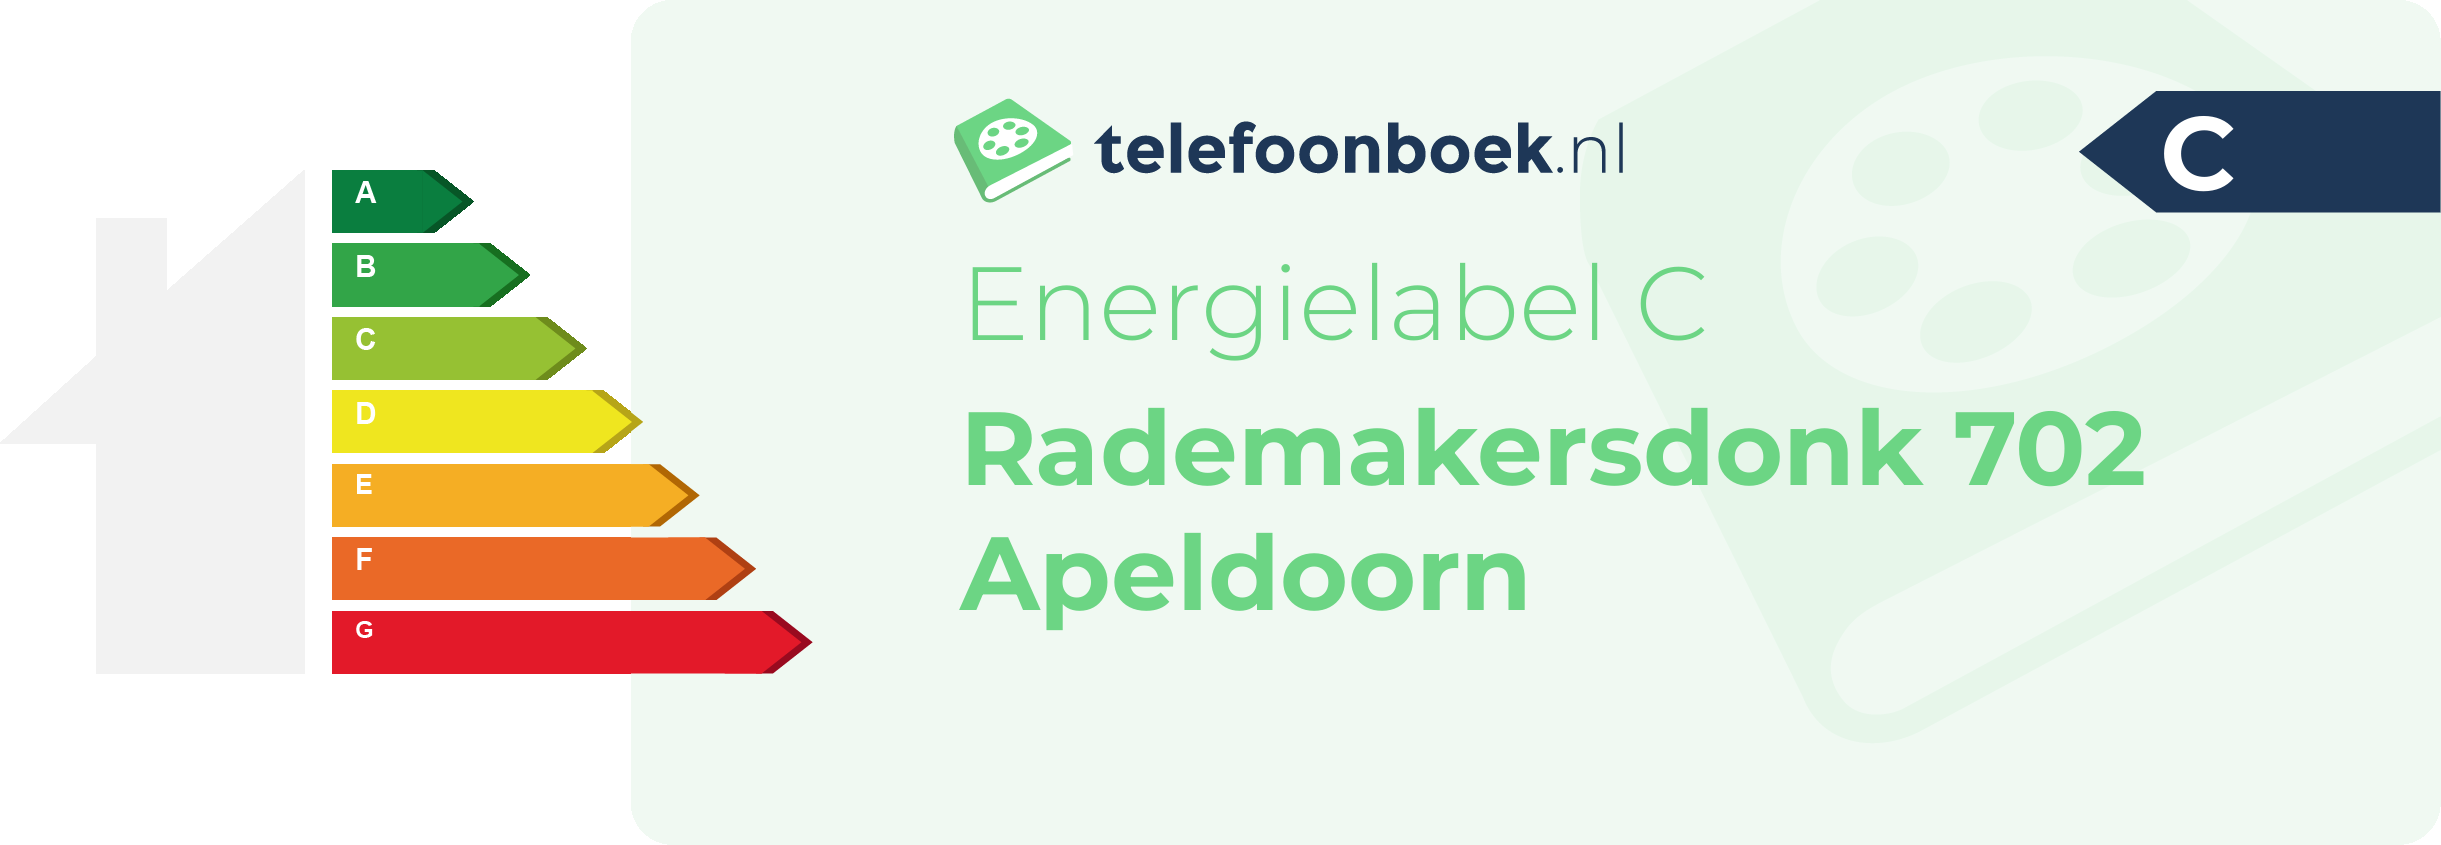 Energielabel Rademakersdonk 702 Apeldoorn